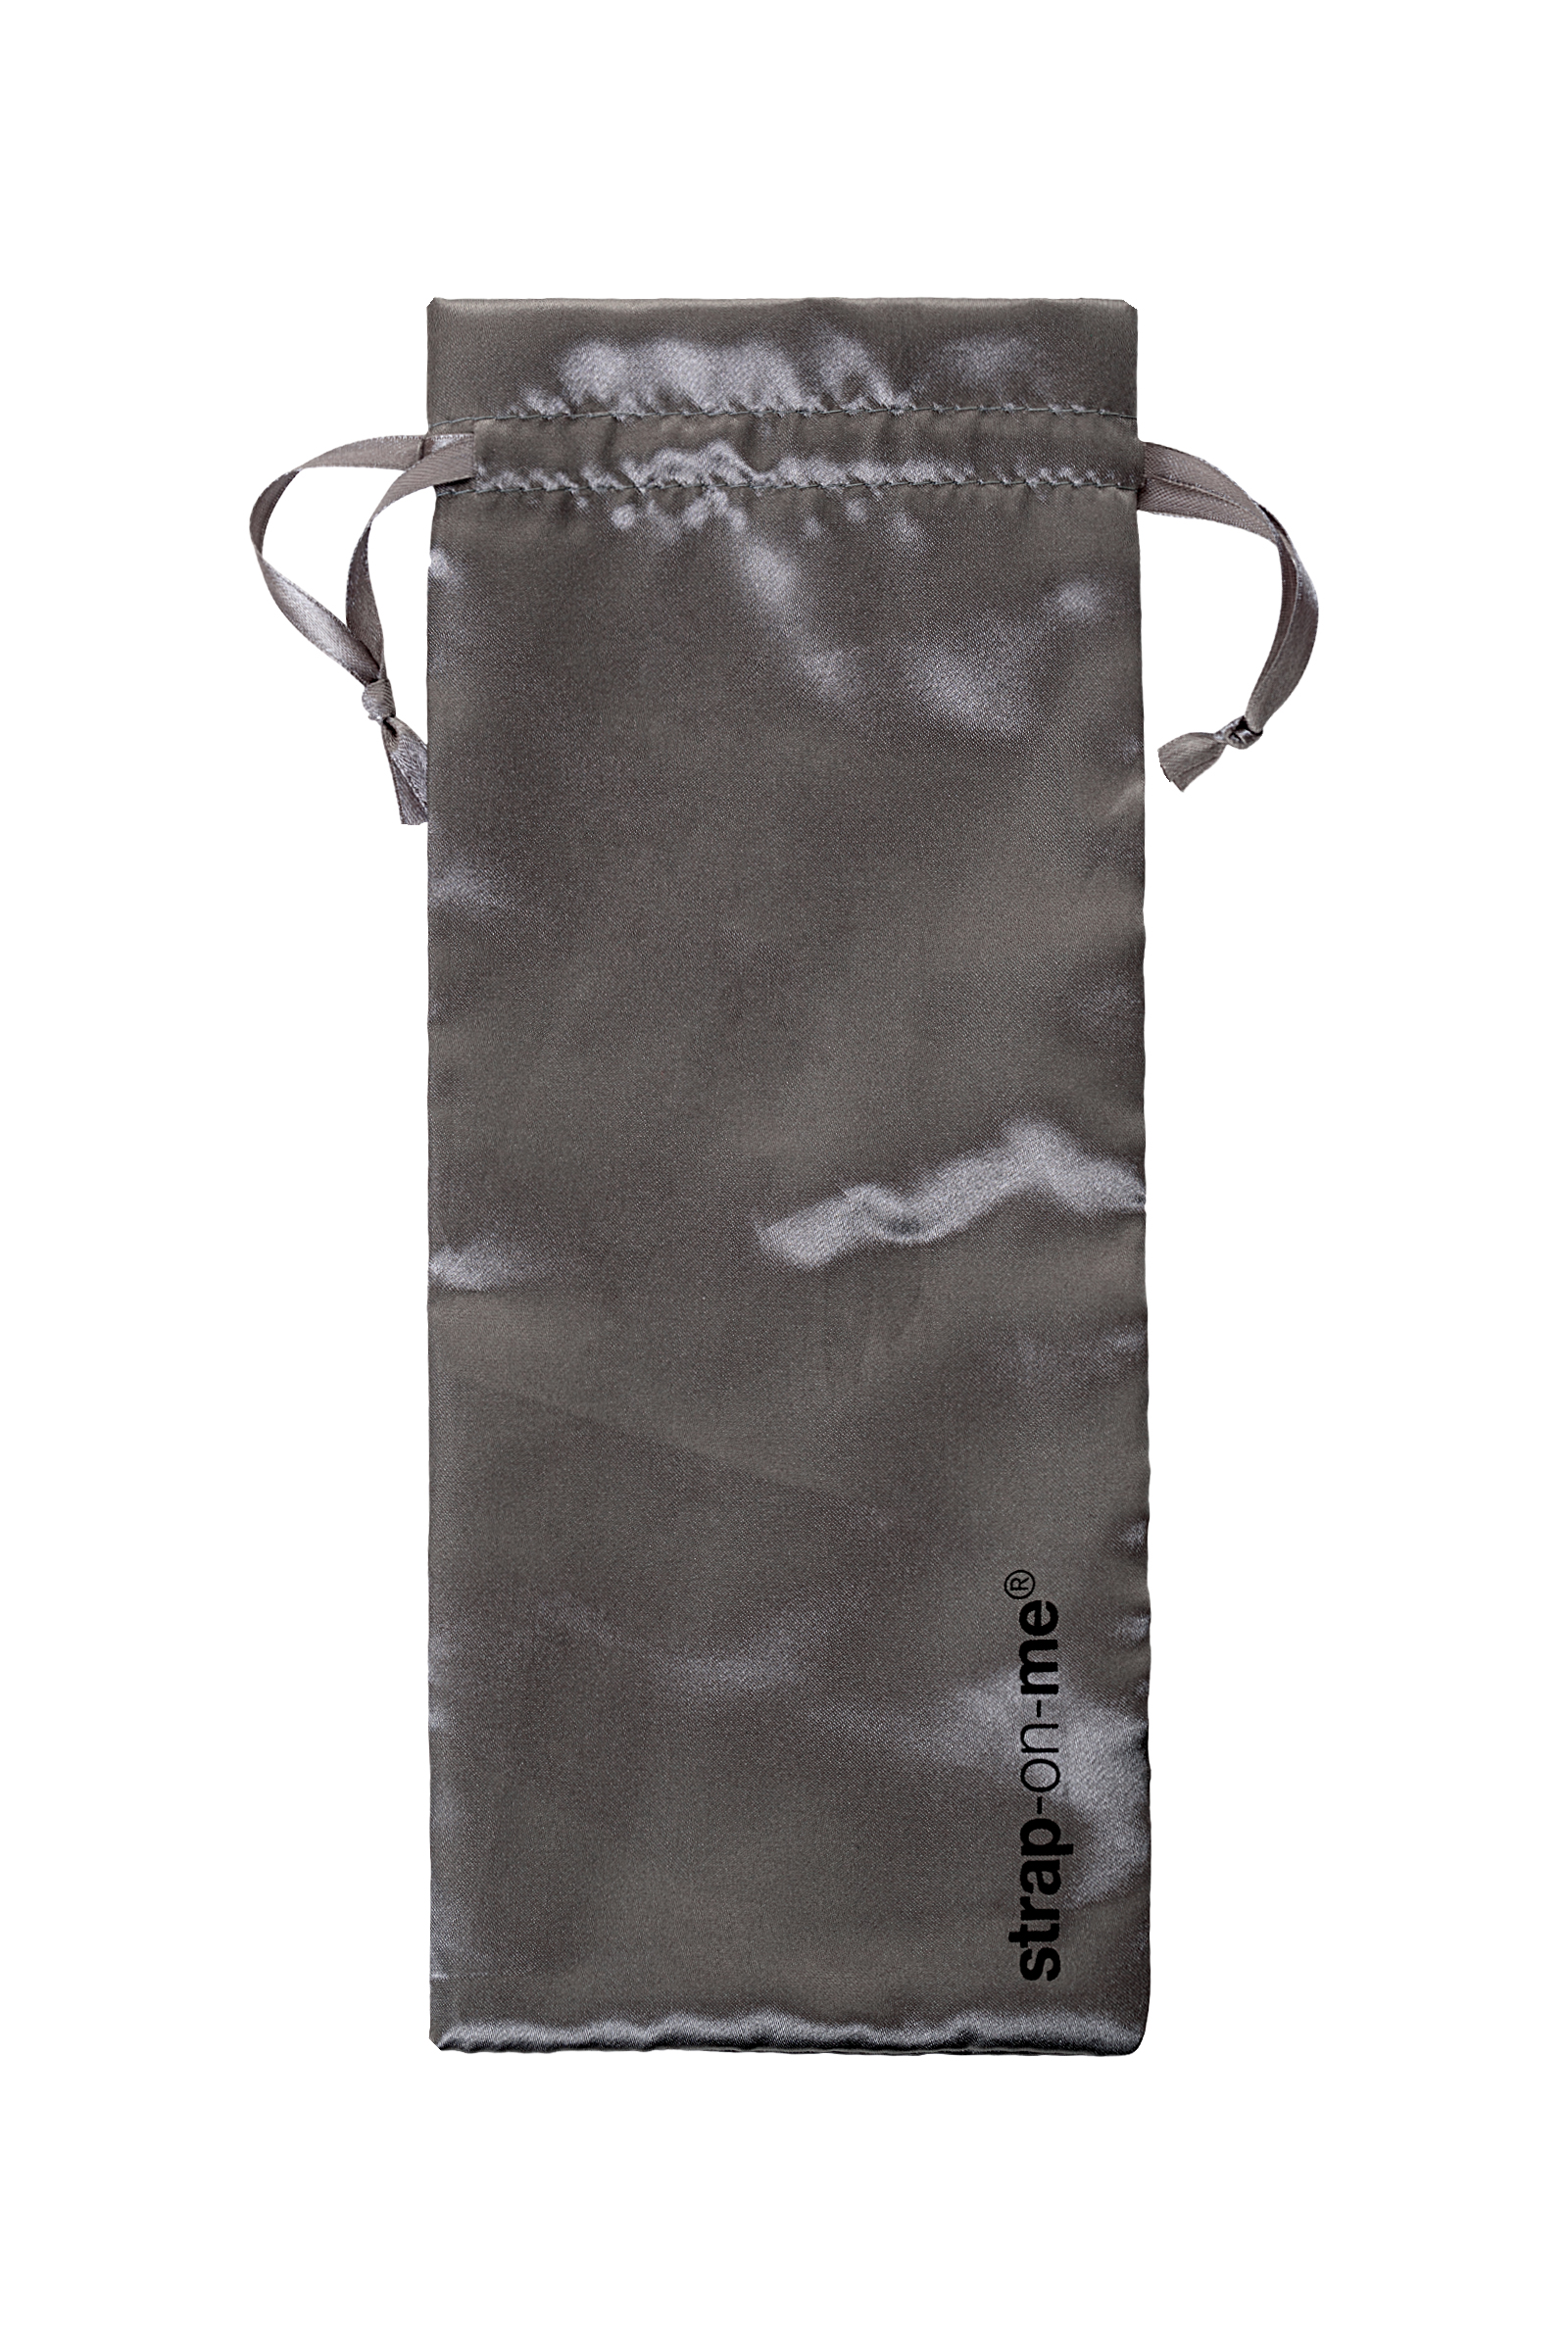 Безремневой нереалистичный страпон Strap-on-me, M, силикон, черный, 24,5 см. Фото N7